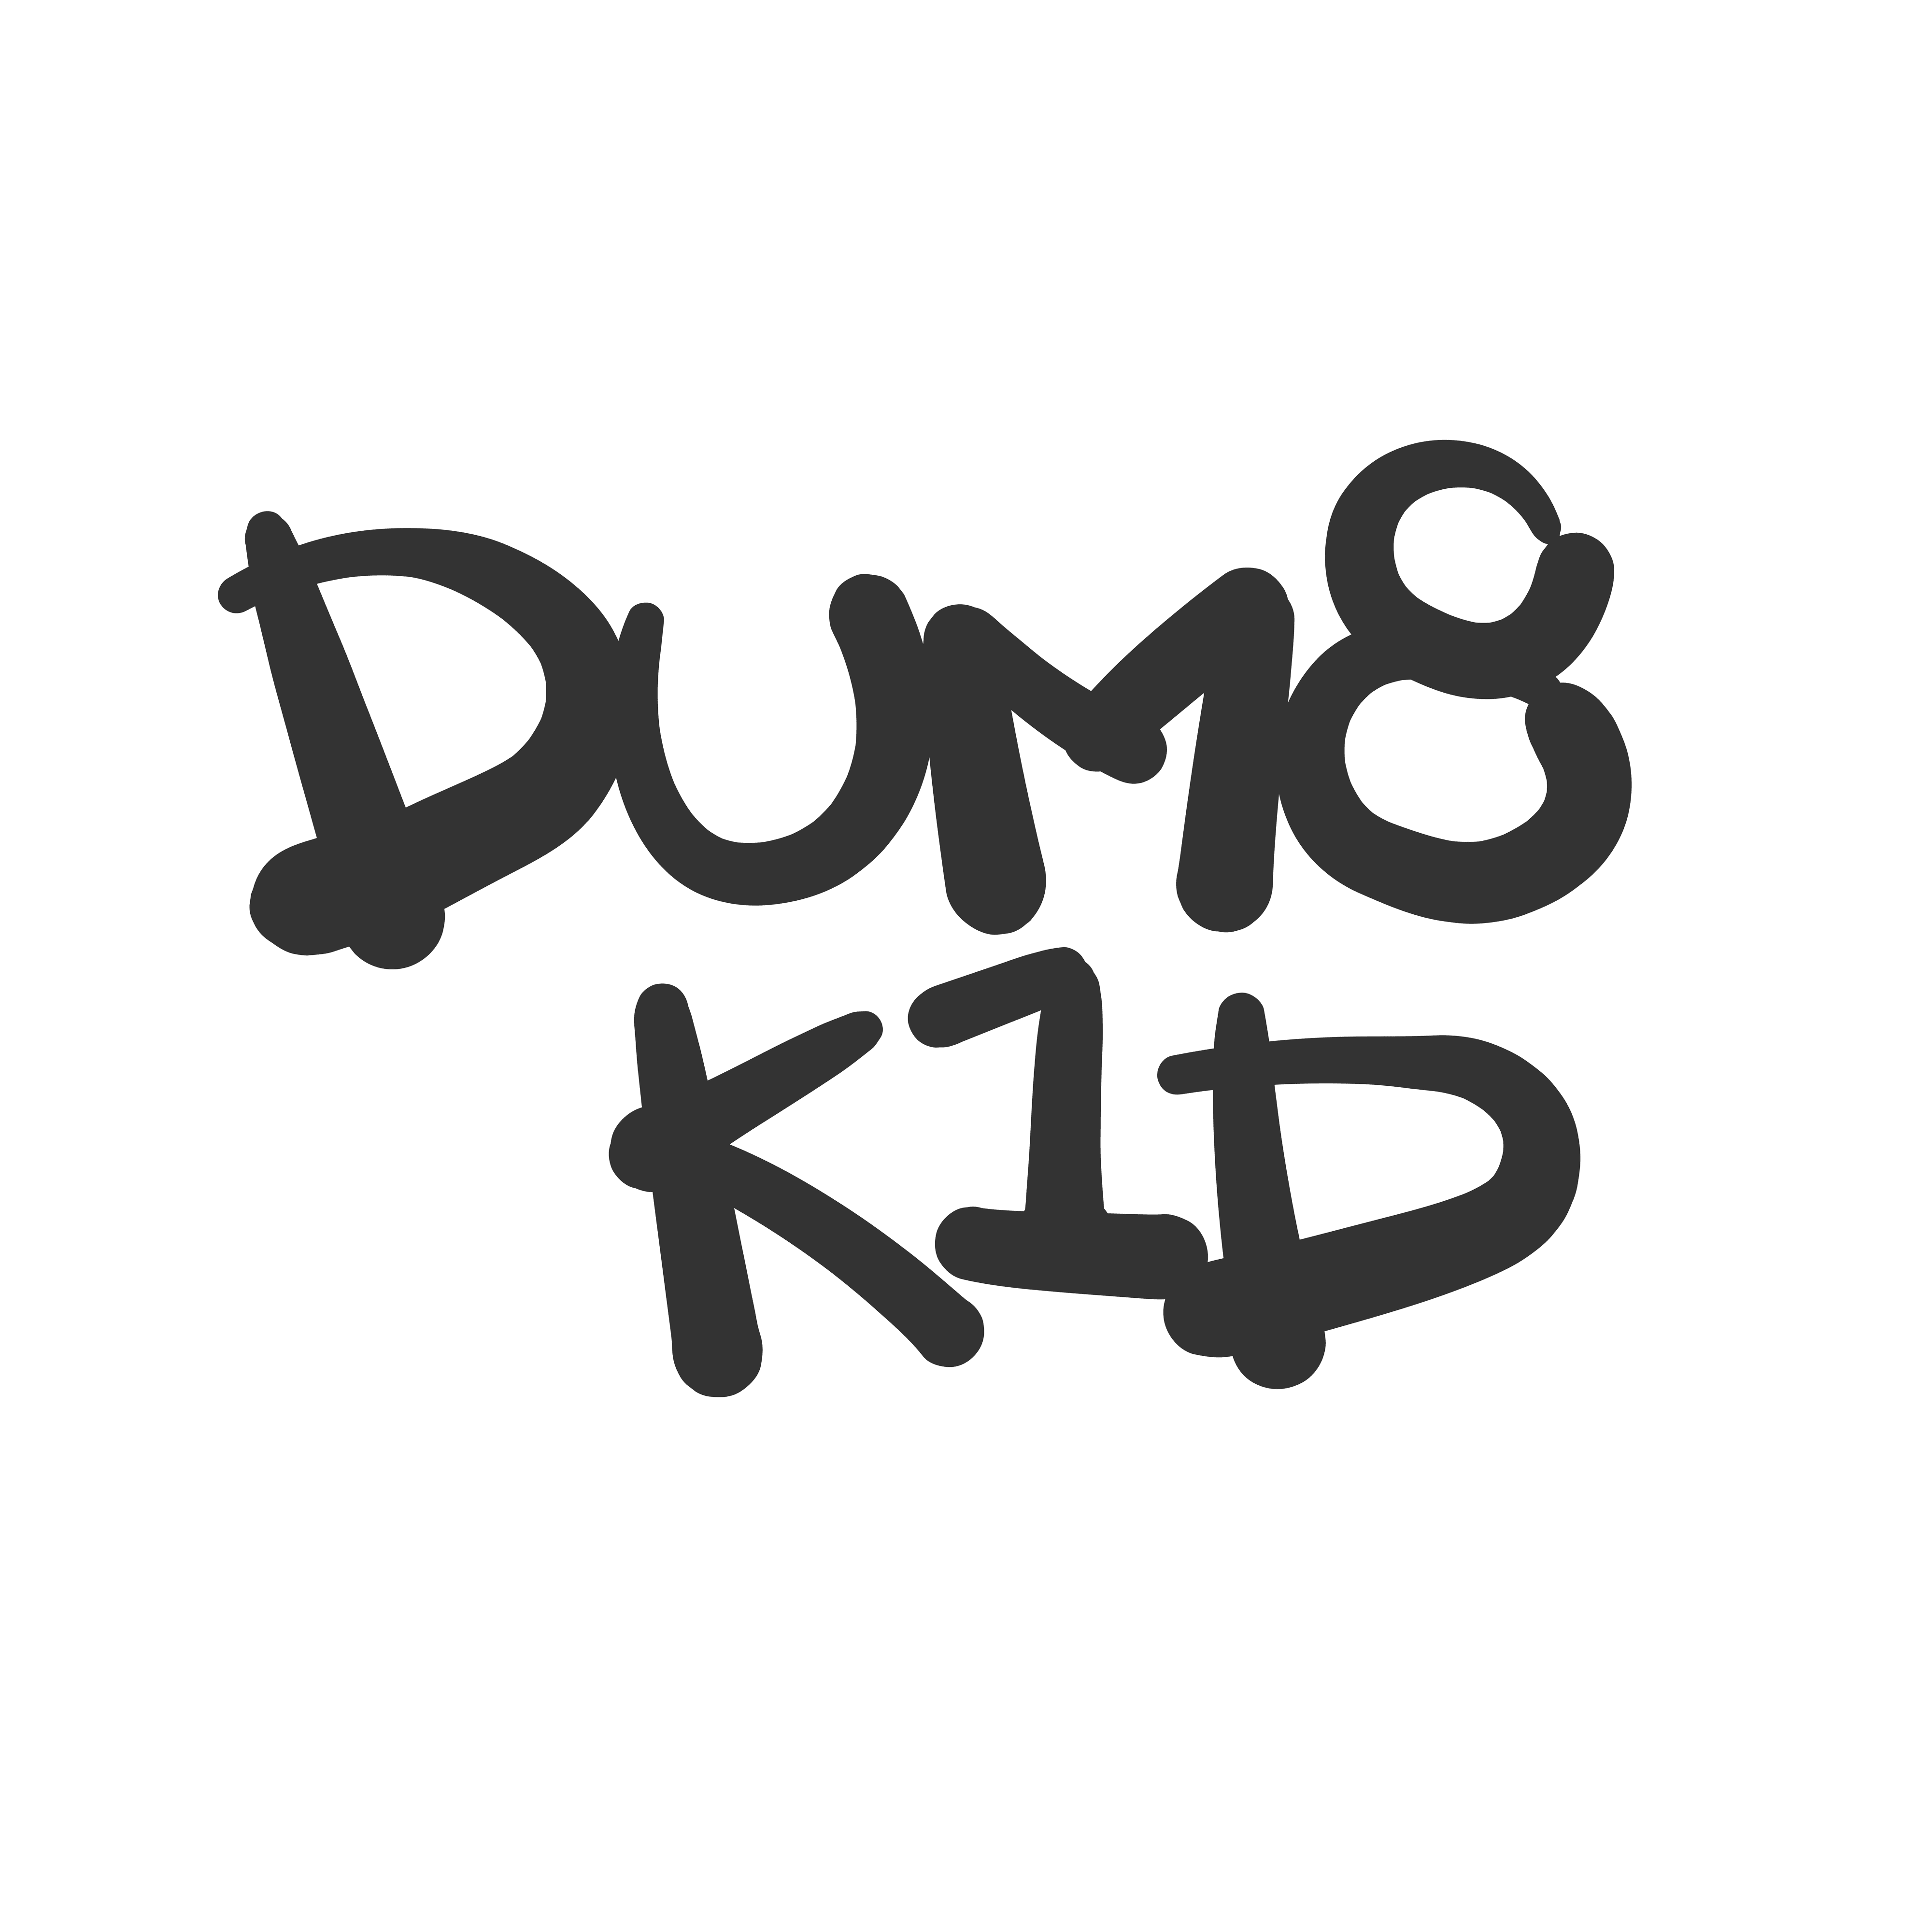 dum8_k1d